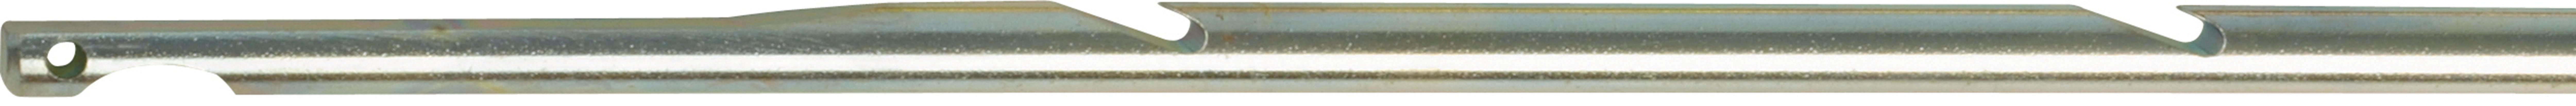 Šíp so špičkou pre harpúny s gumou Ø 6.5 mm 